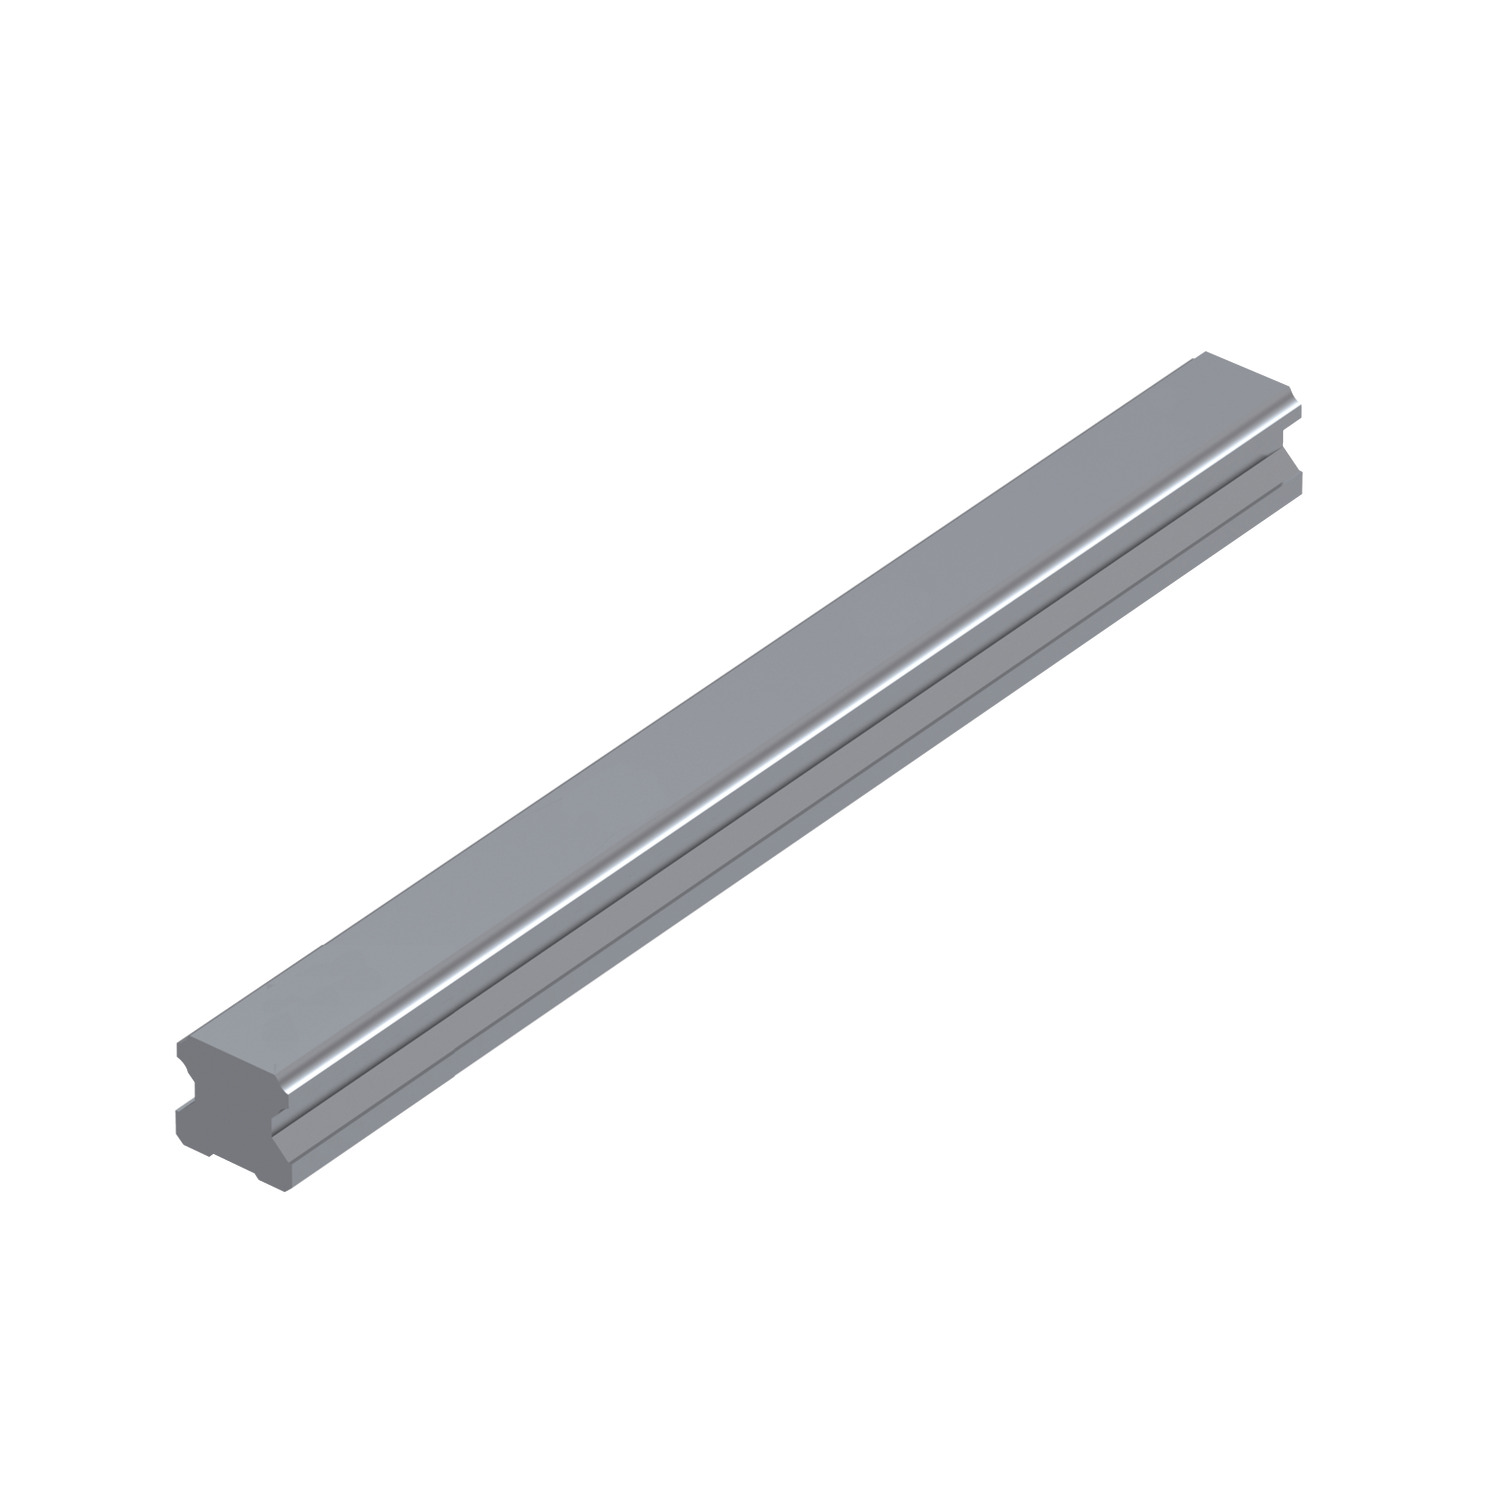 L1016.RF 20mm Linear Guide Rail